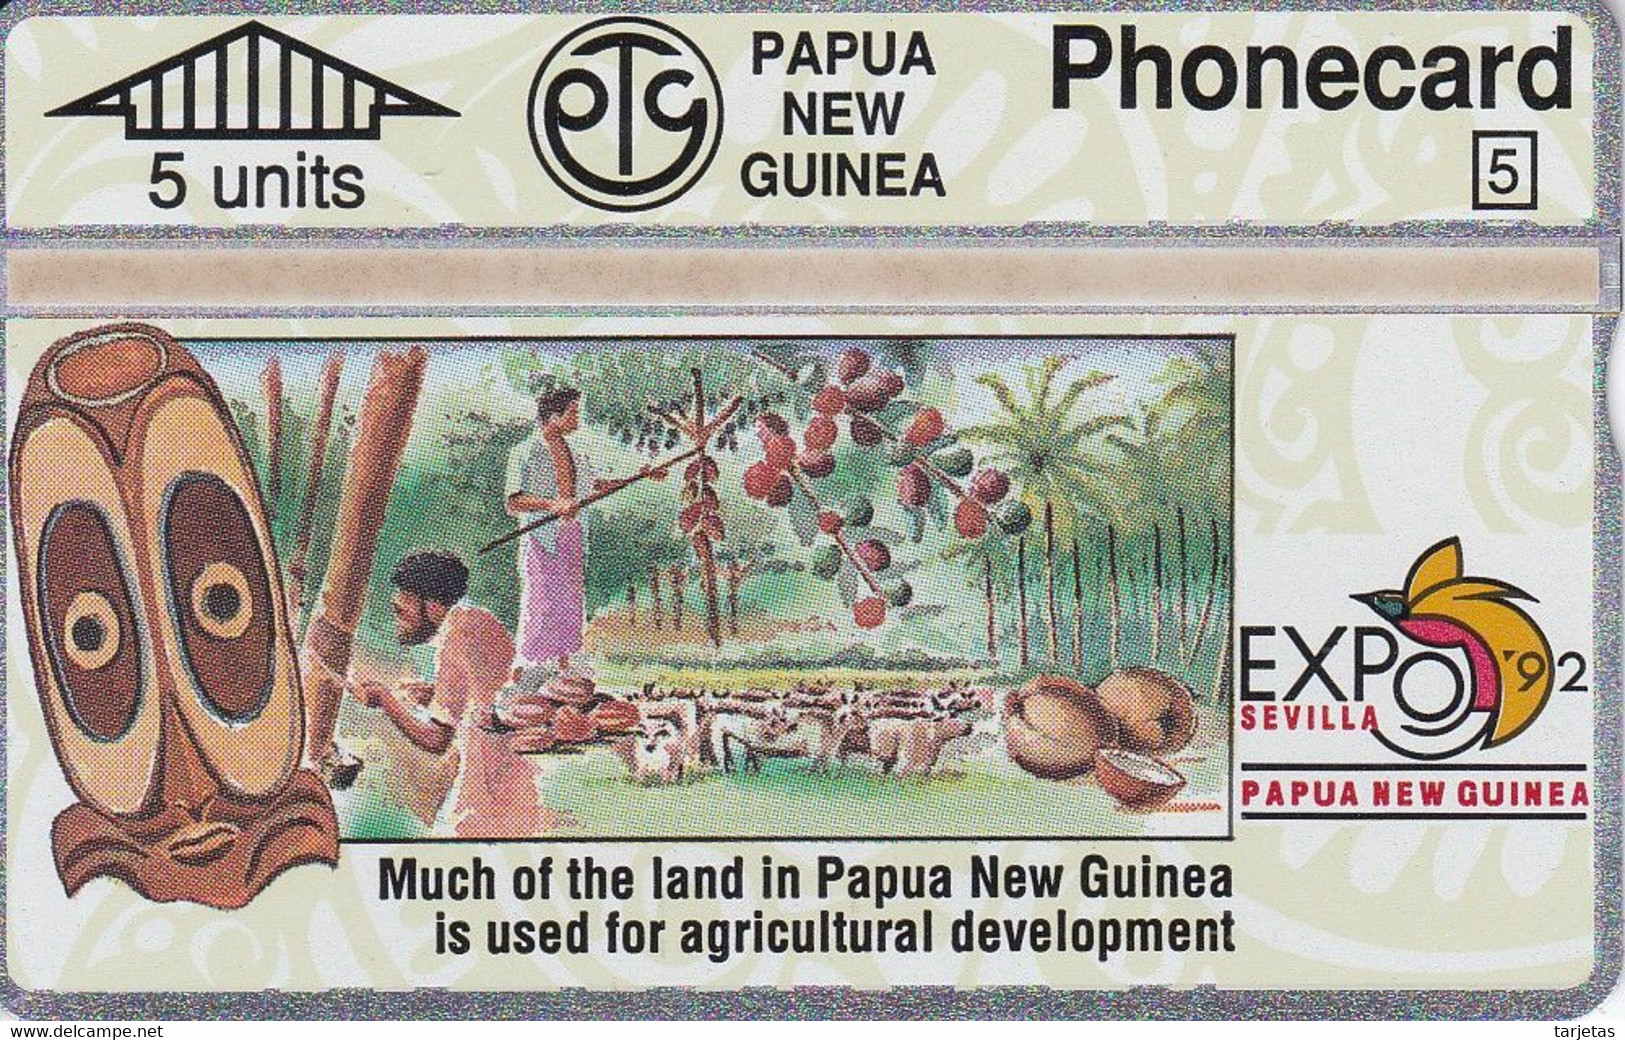 TARJETA DE PAPUA Y NUEVA GUINEA EXPO 92 SEVILLA (203A) (NUEVA-MINT) - Papoea-Nieuw-Guinea